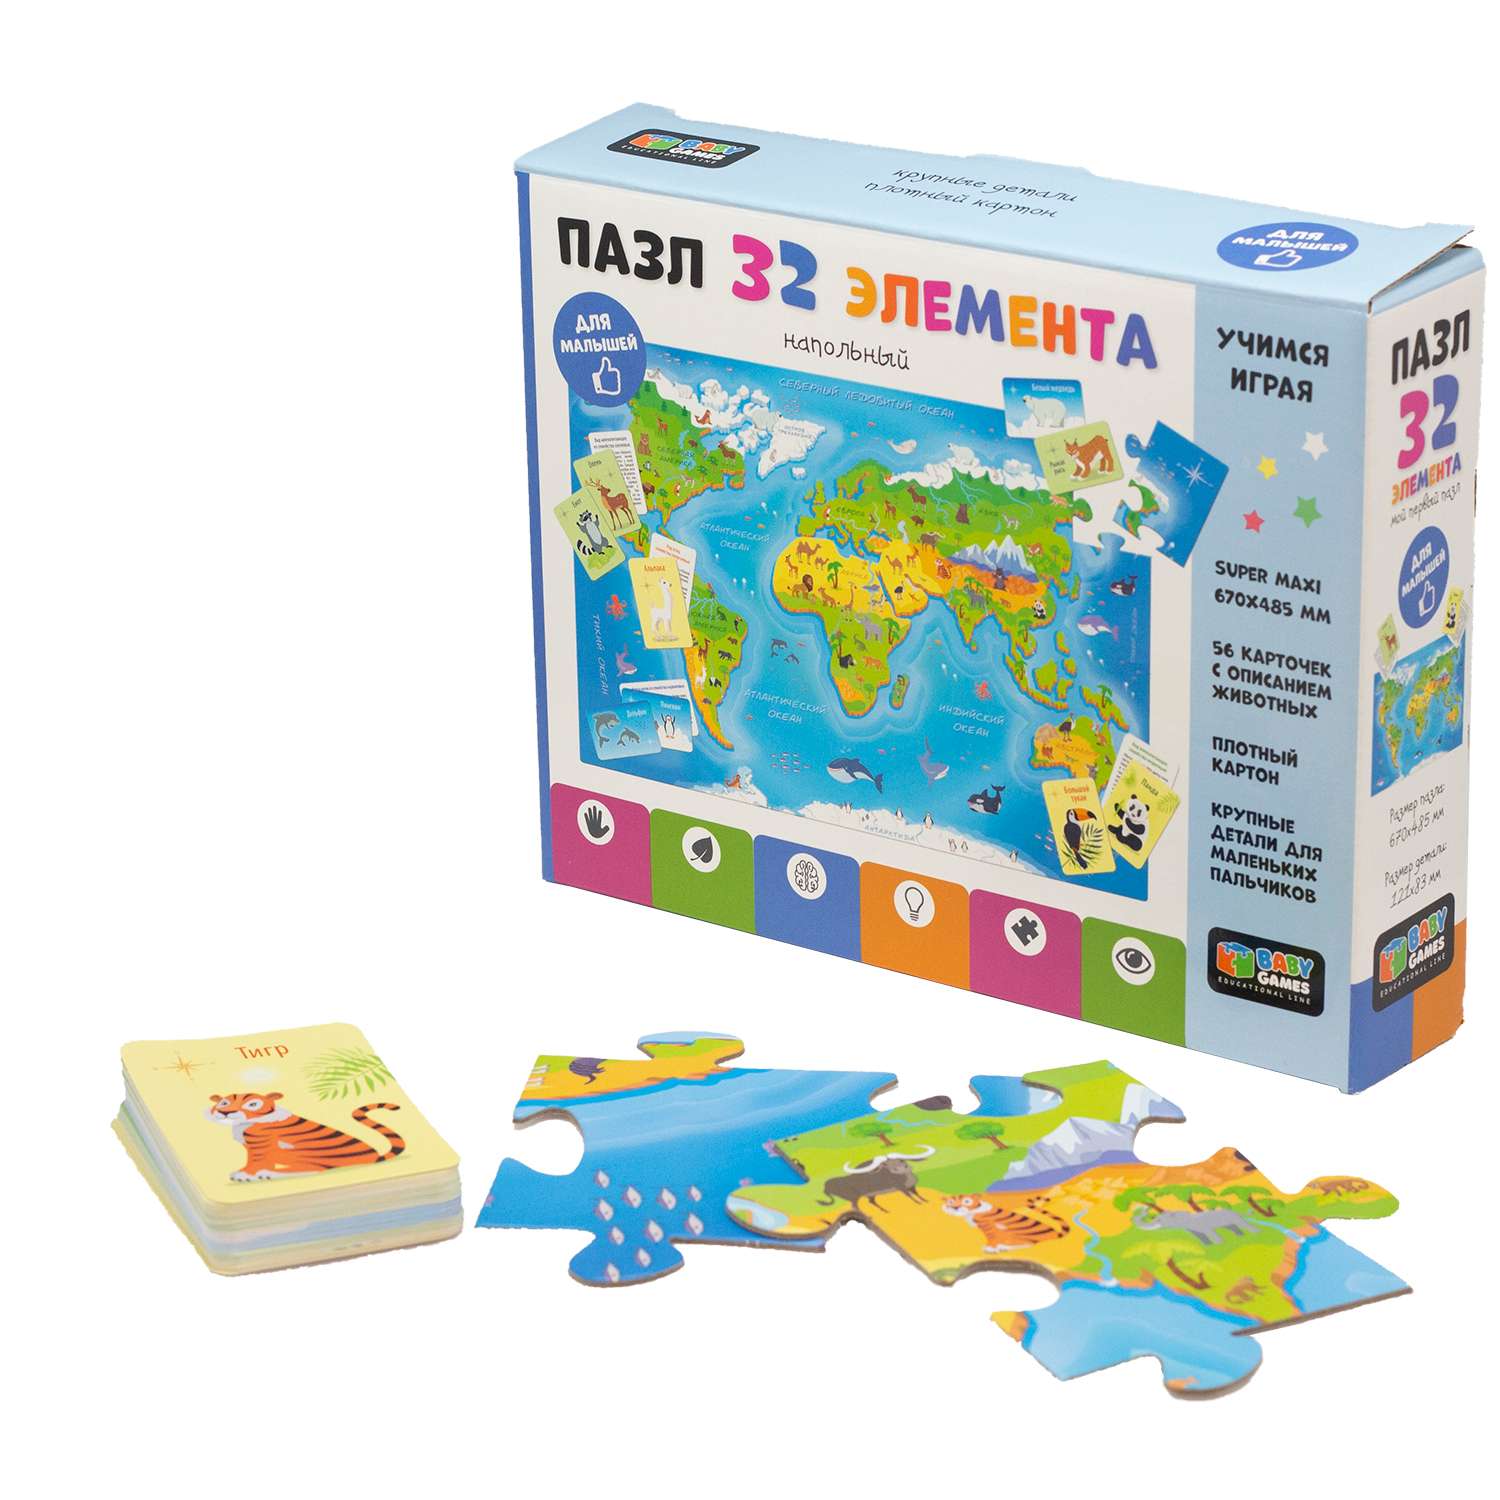 Пазл Origami BabyGames Карта мира обучающие карточки напольный 32элемента 06748 - фото 3